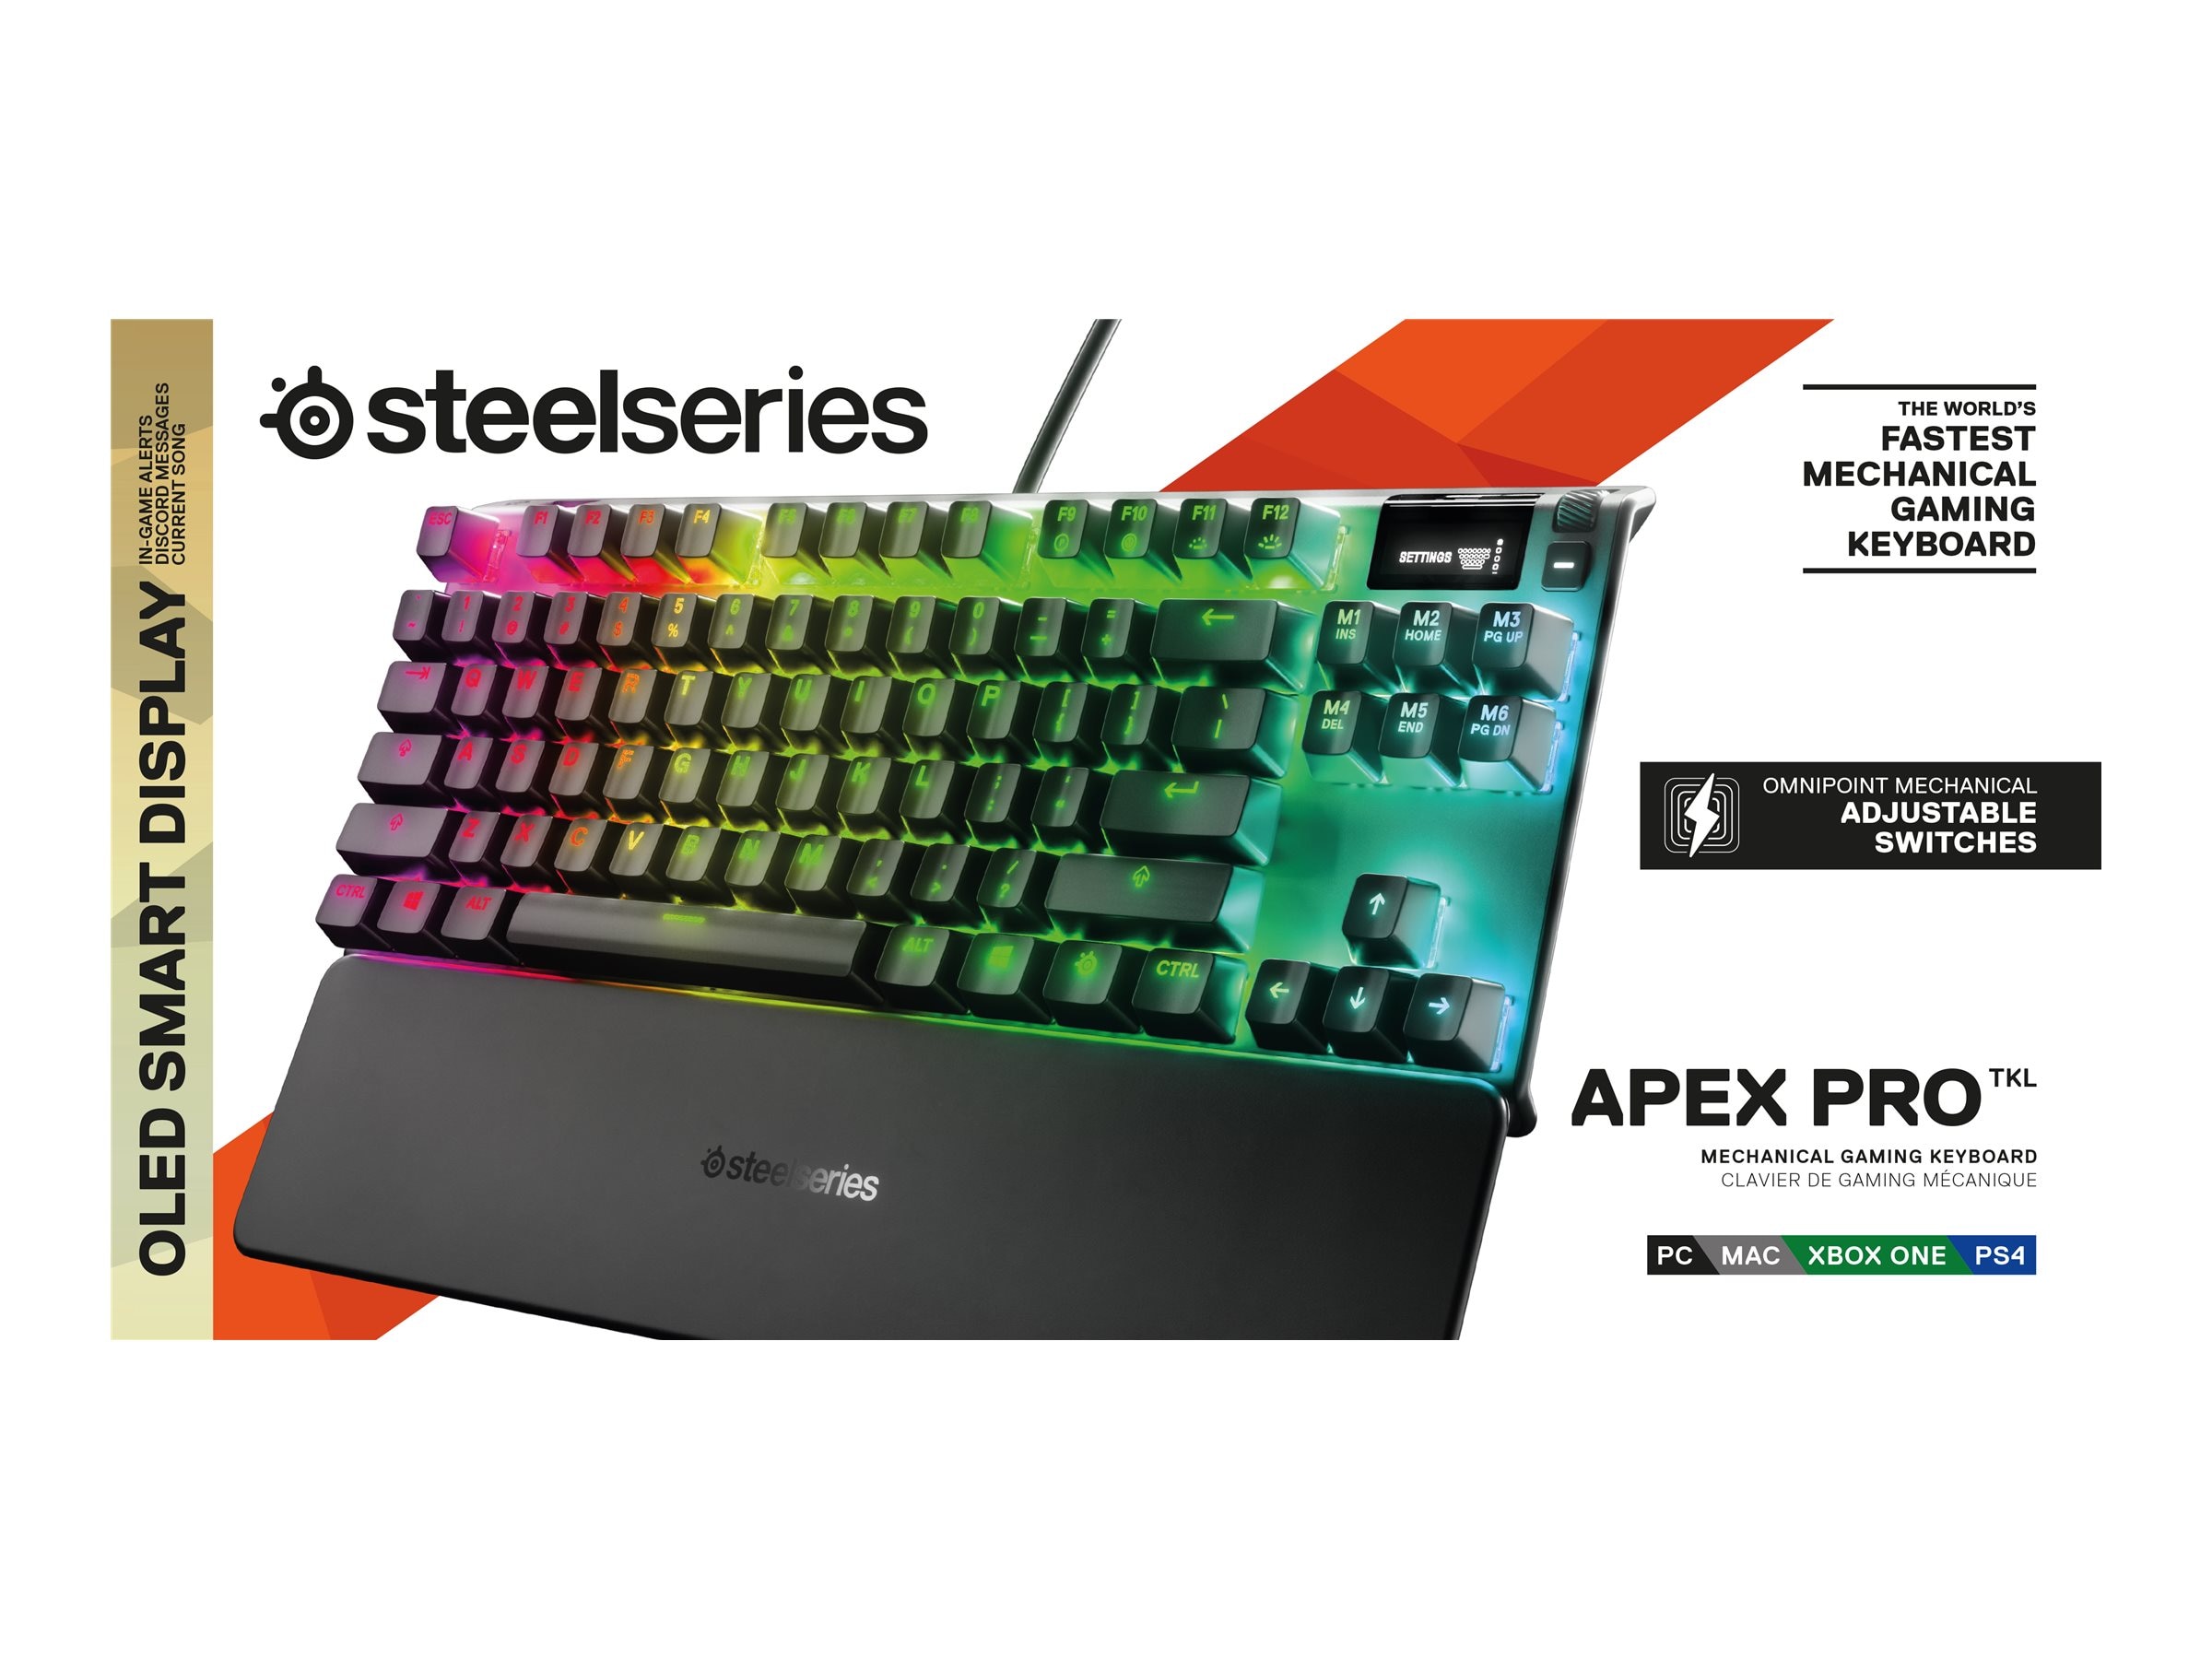 Steelseries Apex Pro TKL Mechanical Gaming Keyboard